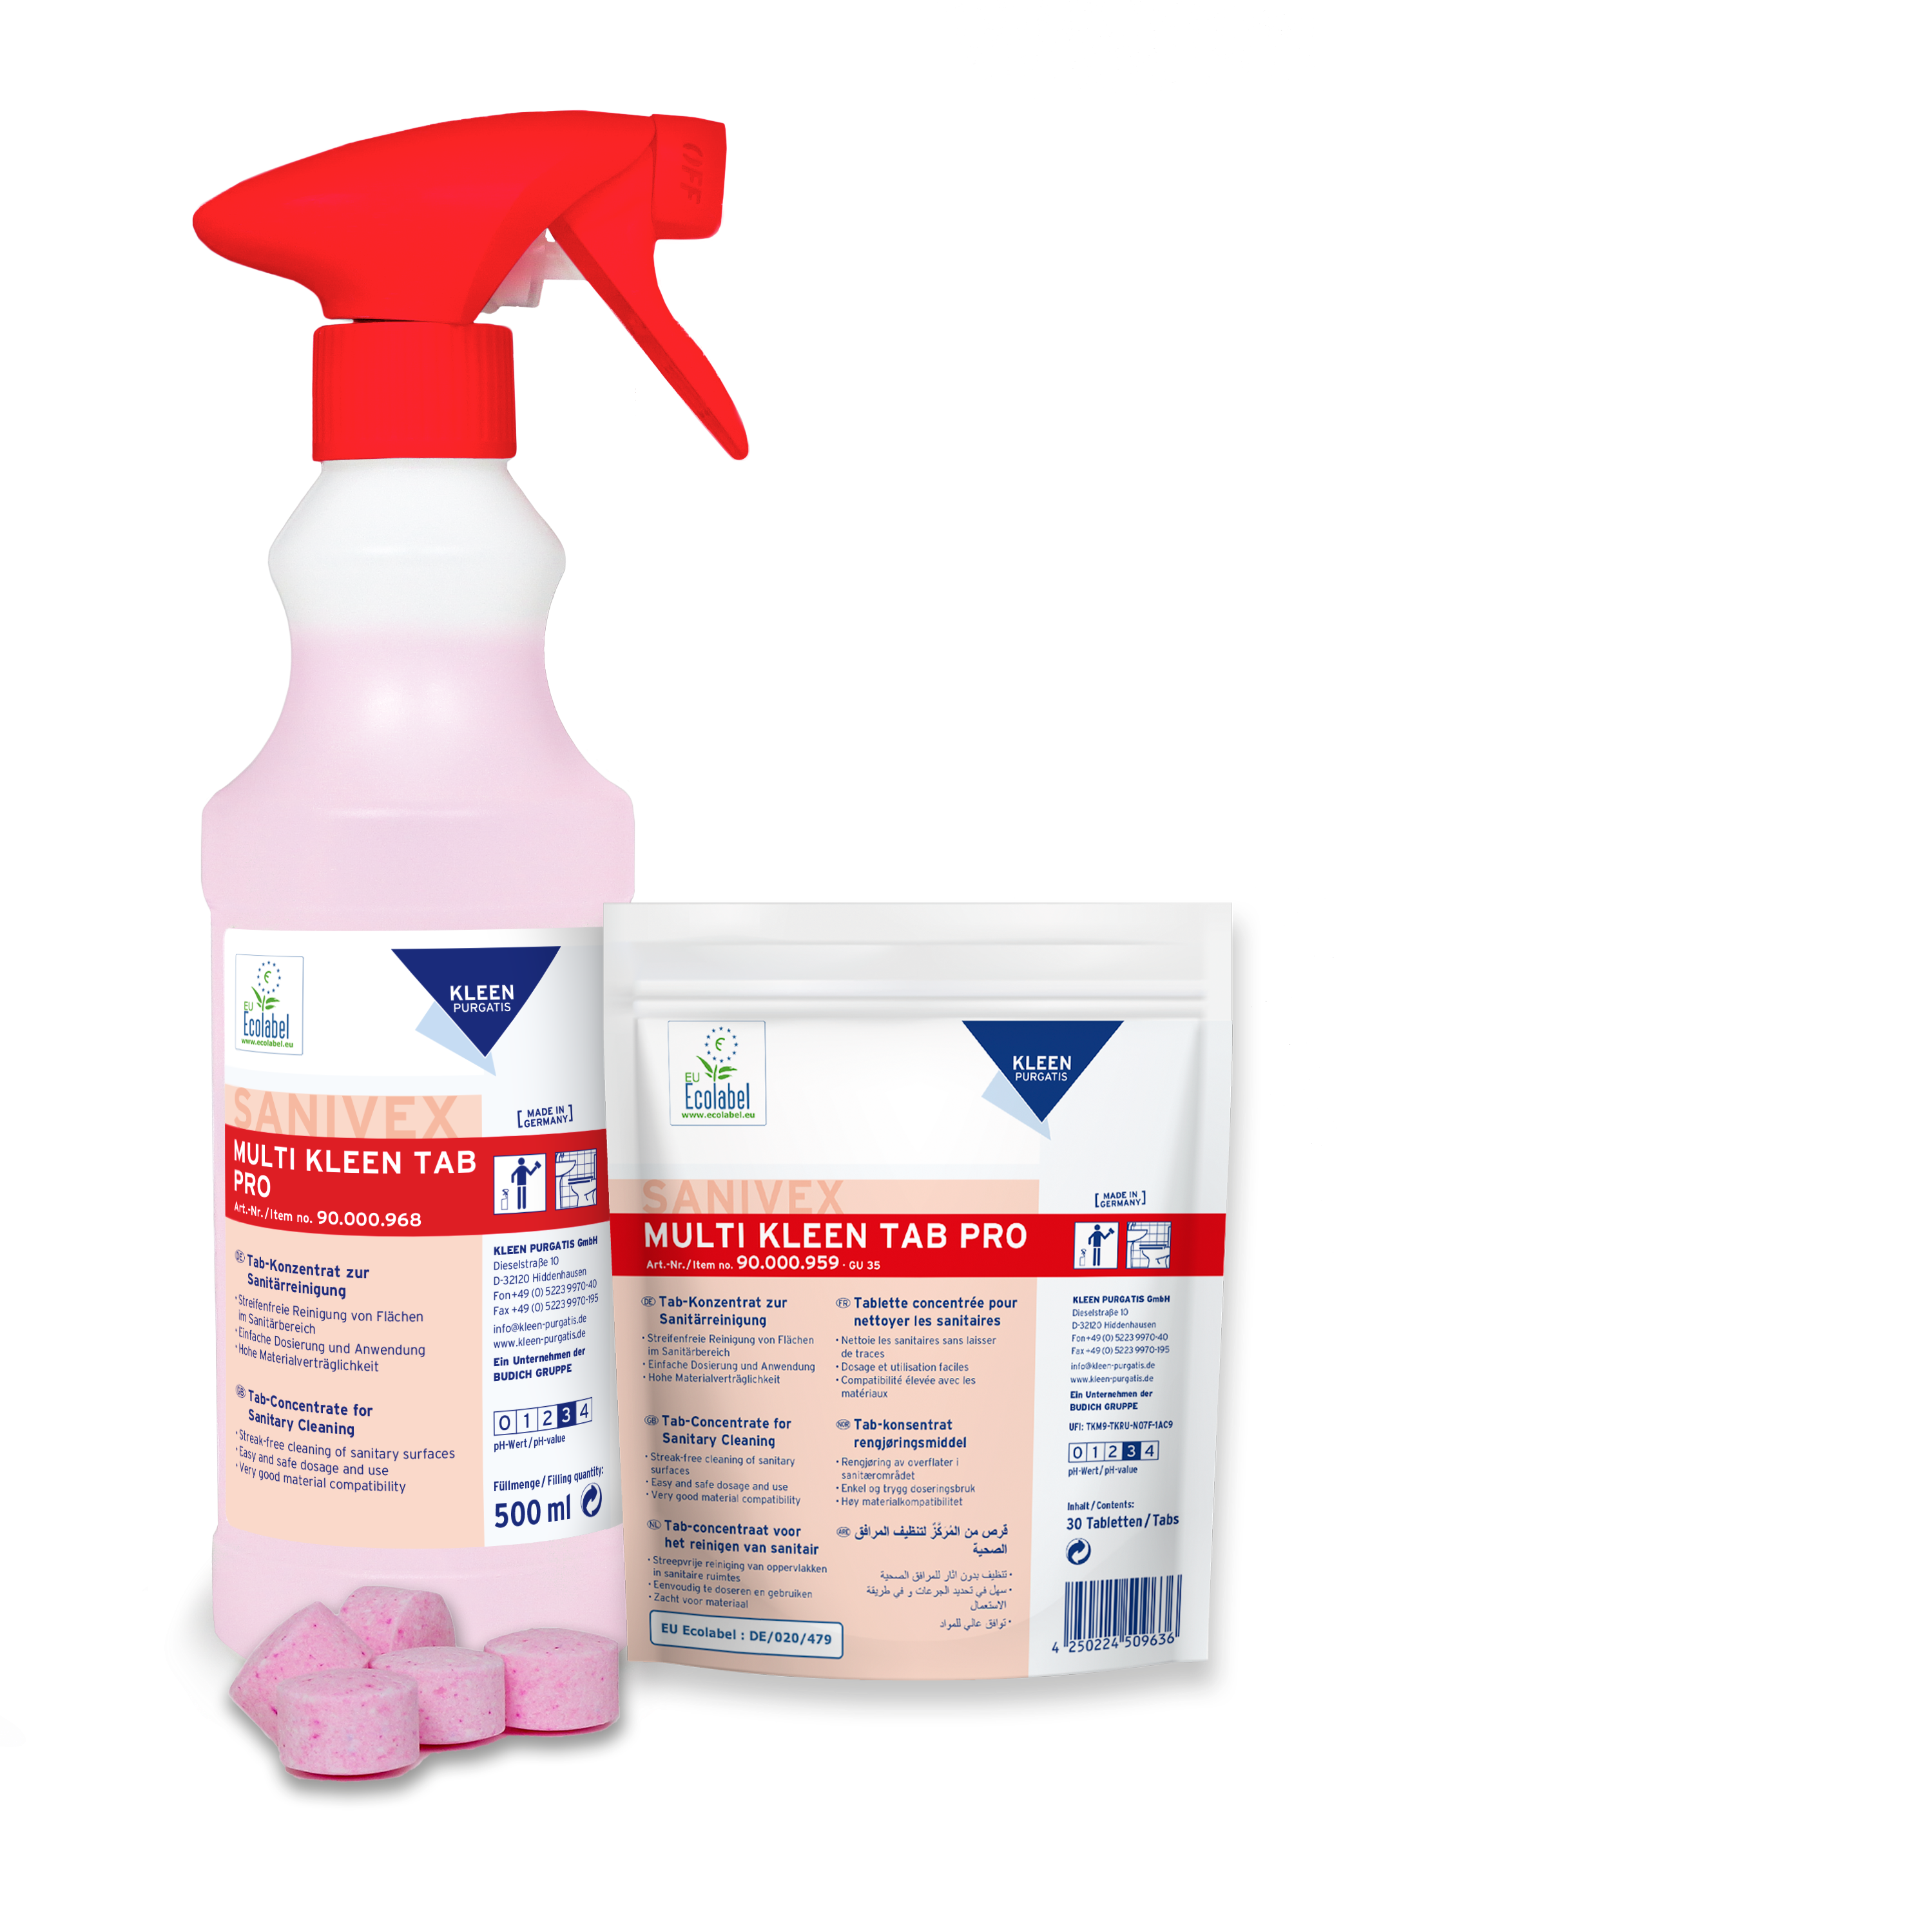 Kleen LEERFLASCHE für Sanivex Multi Kleen Tab Pro, Sanitärunterhaltsreinigung, wiederverwendbar